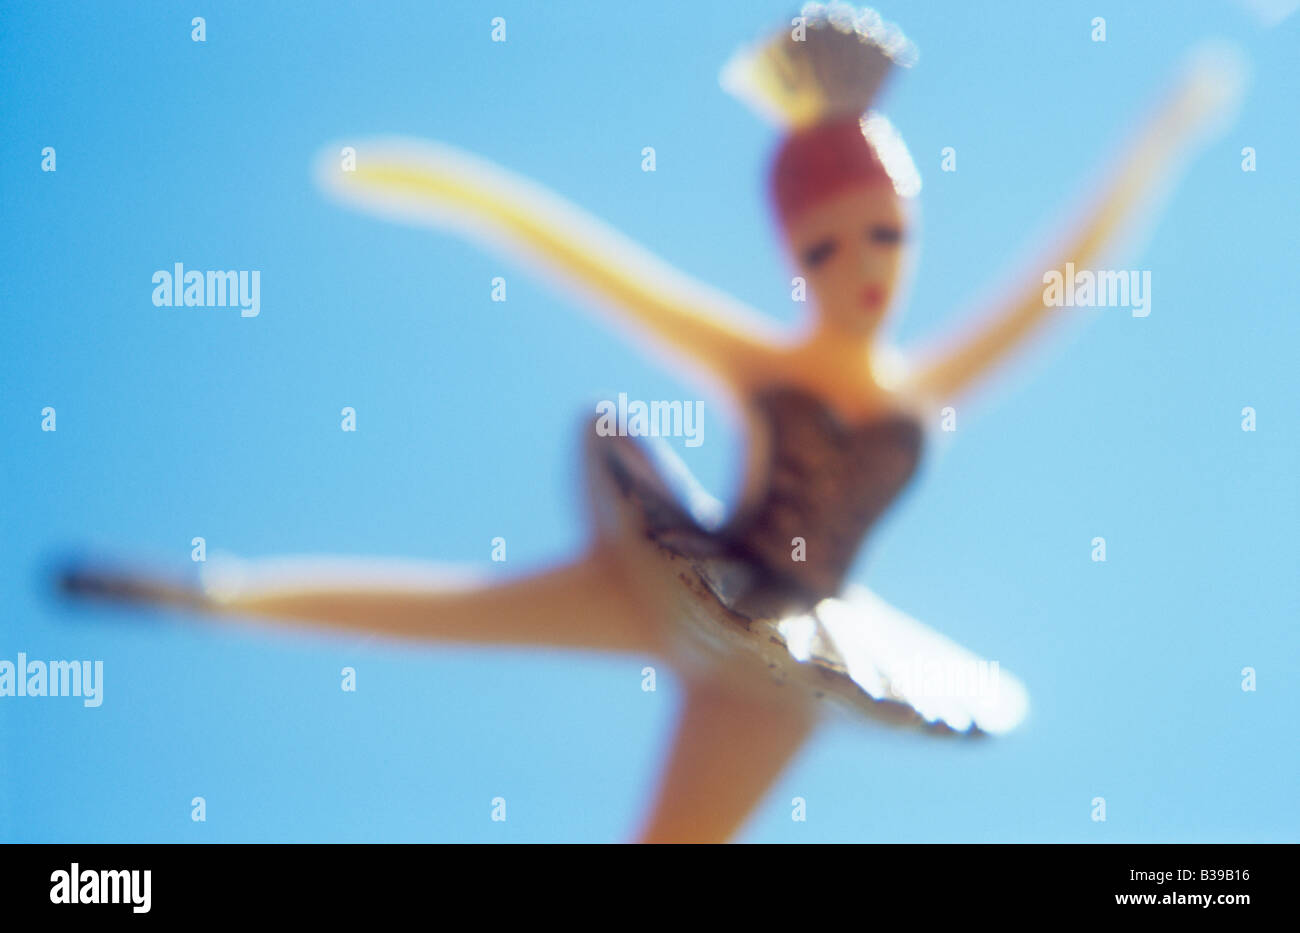 Impressionistica close up del modello della ballerina bilanciato su una gamba o jumping rivolta verso il viewer con cielo blu dietro Foto Stock